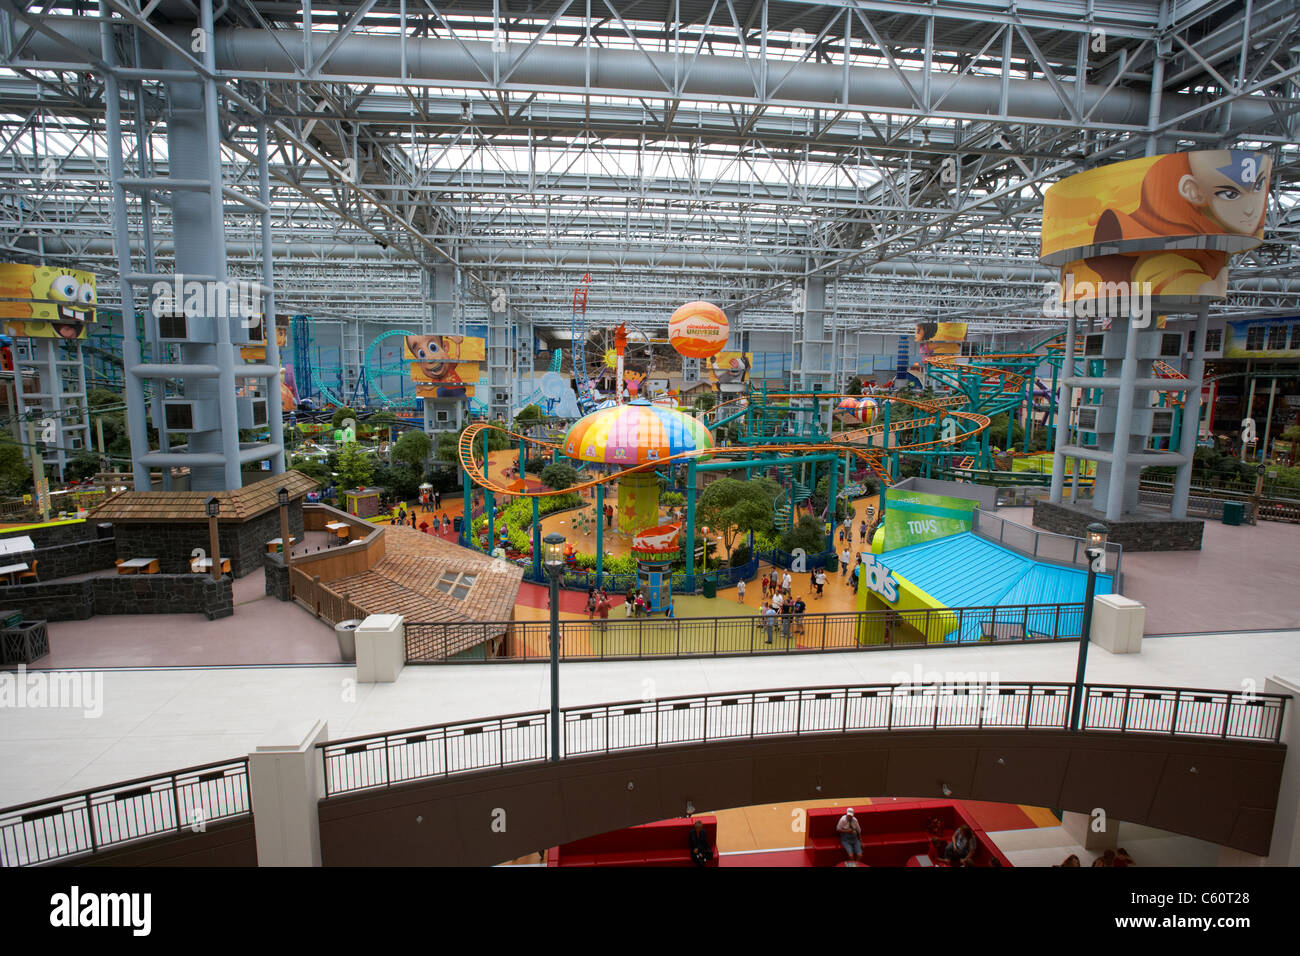 Nickelodeon universe theme park dans le centre commercial Mall of America à bloomington au Minnesota, États-Unis d'Amérique Banque D'Images